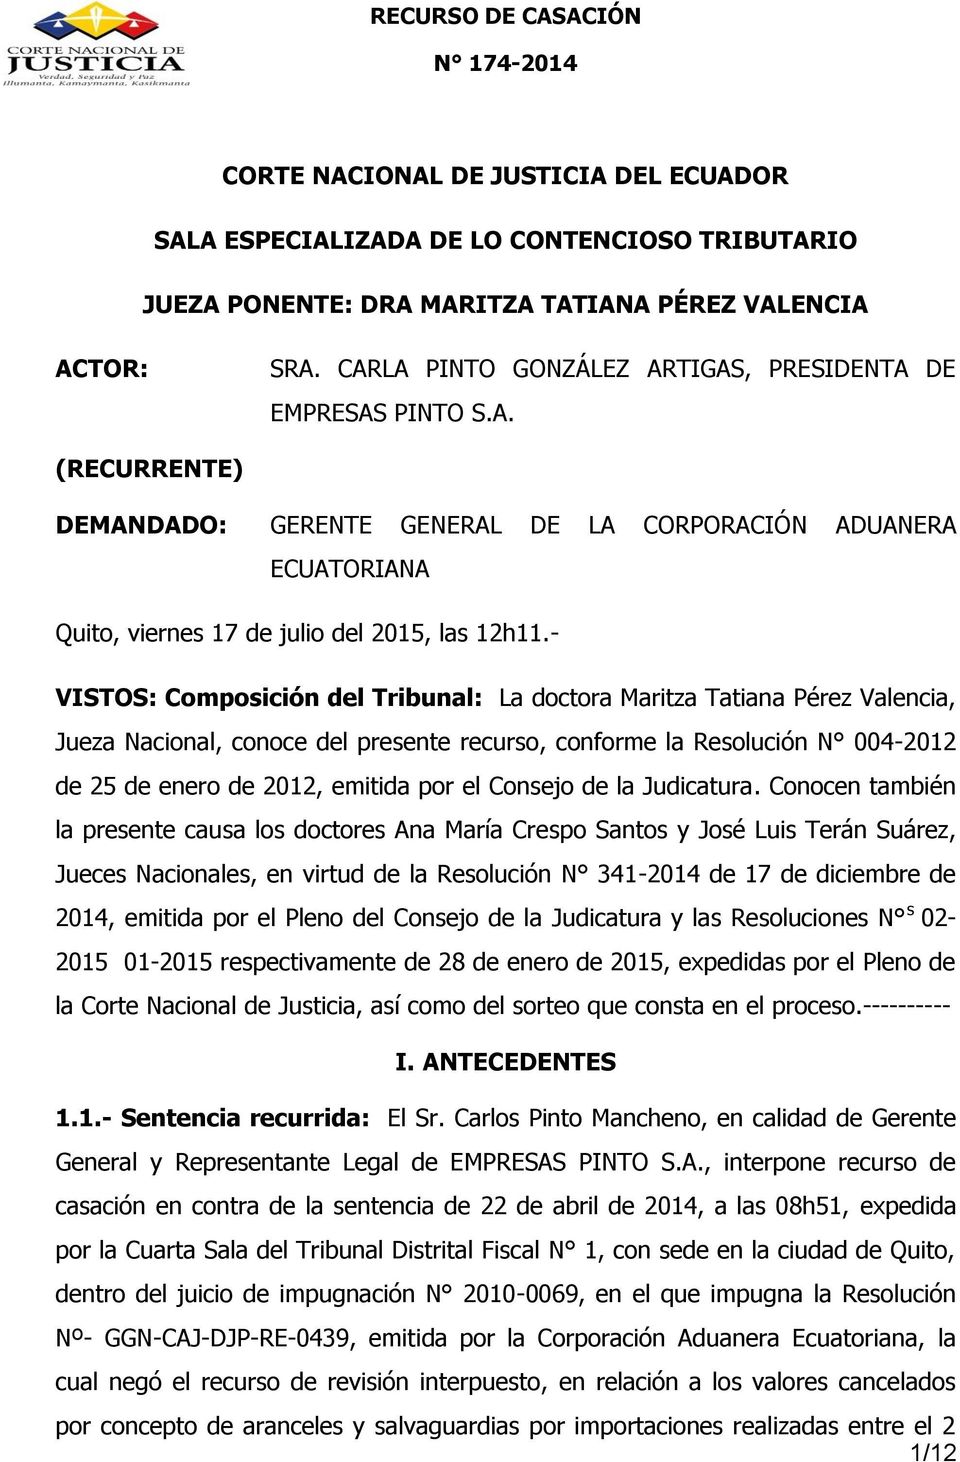 - VISTOS: Composición del Tribunal: La doctora Maritza Tatiana Pérez Valencia, Jueza Nacional, conoce del presente recurso, conforme la Resolución N 004-2012 de 25 de enero de 2012, emitida por el